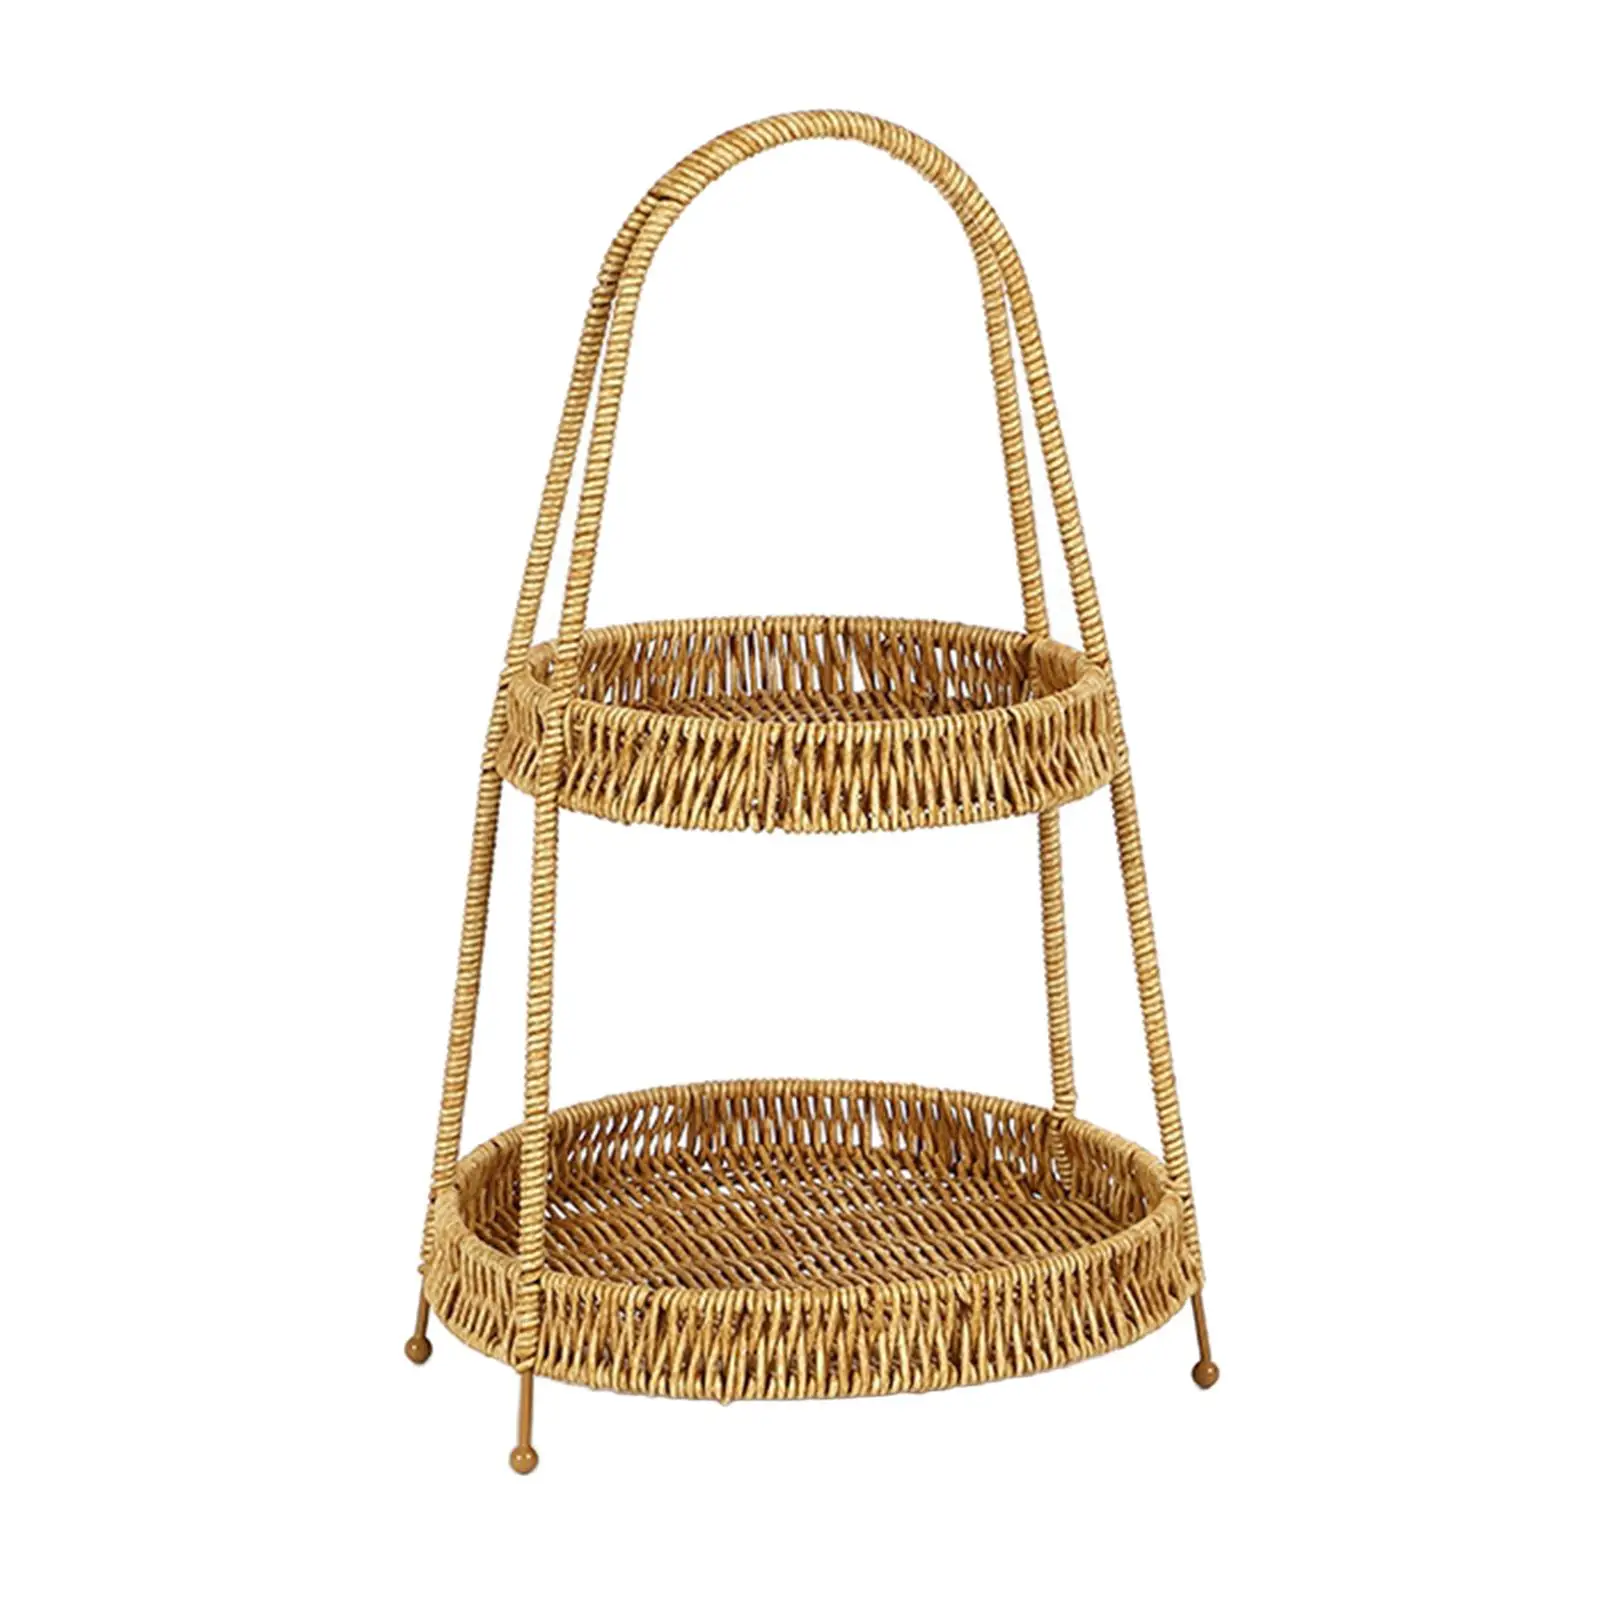 Multipurpose Imitation Rattan Basket Woven Storage Basket Tabletop Food Fruit Basket with Handle for Desktop Outdoor Camping